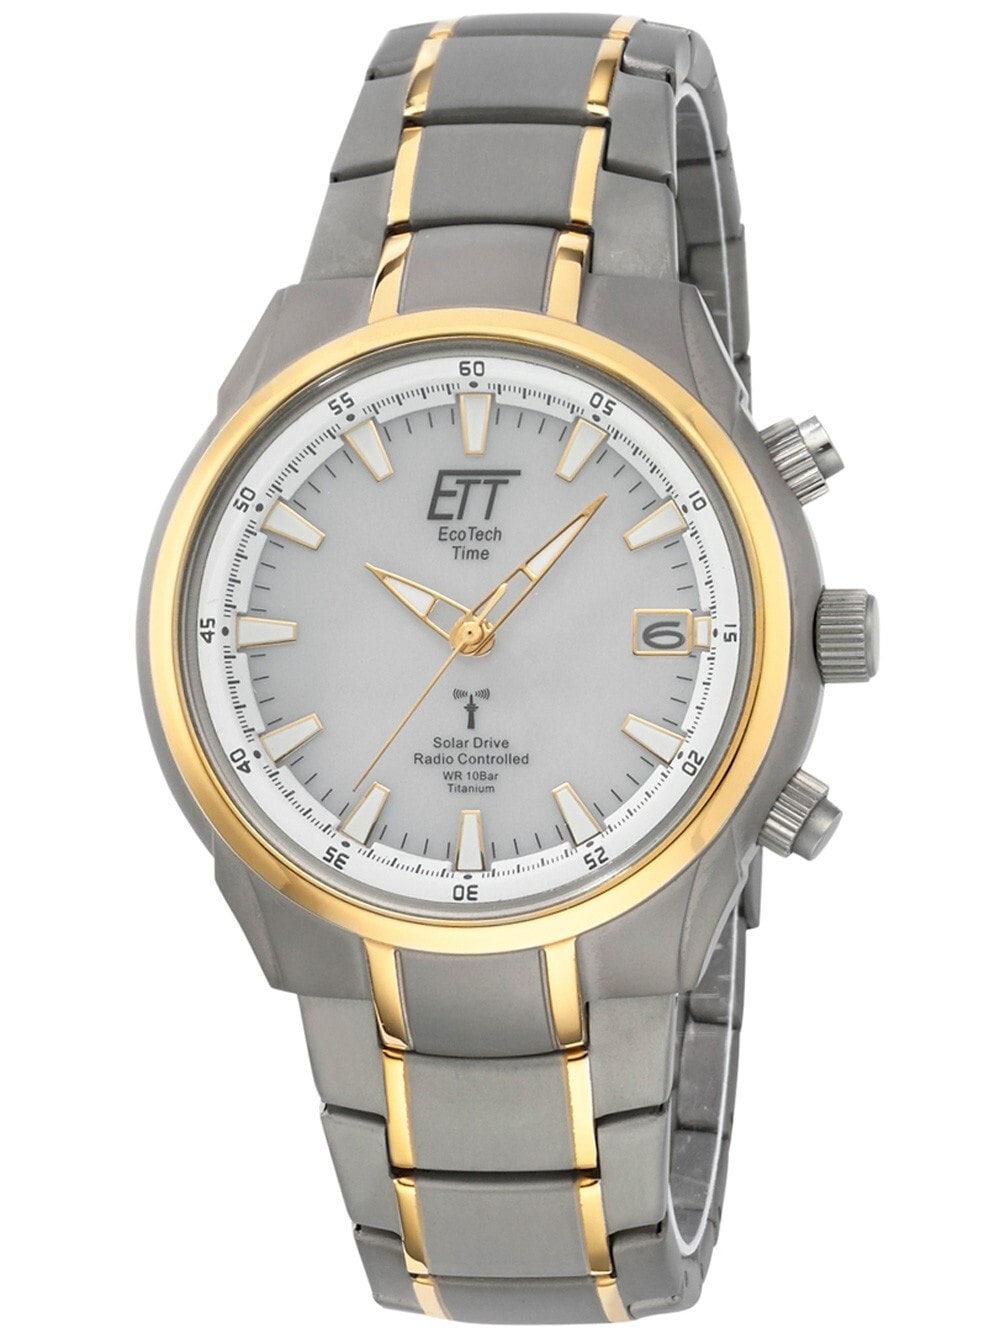 Мужские наручные часы с серебряным браслетом ETT EGT-11337-51M Solar Drive Radio Controlled Aquanaut II Titan Mens 42mm